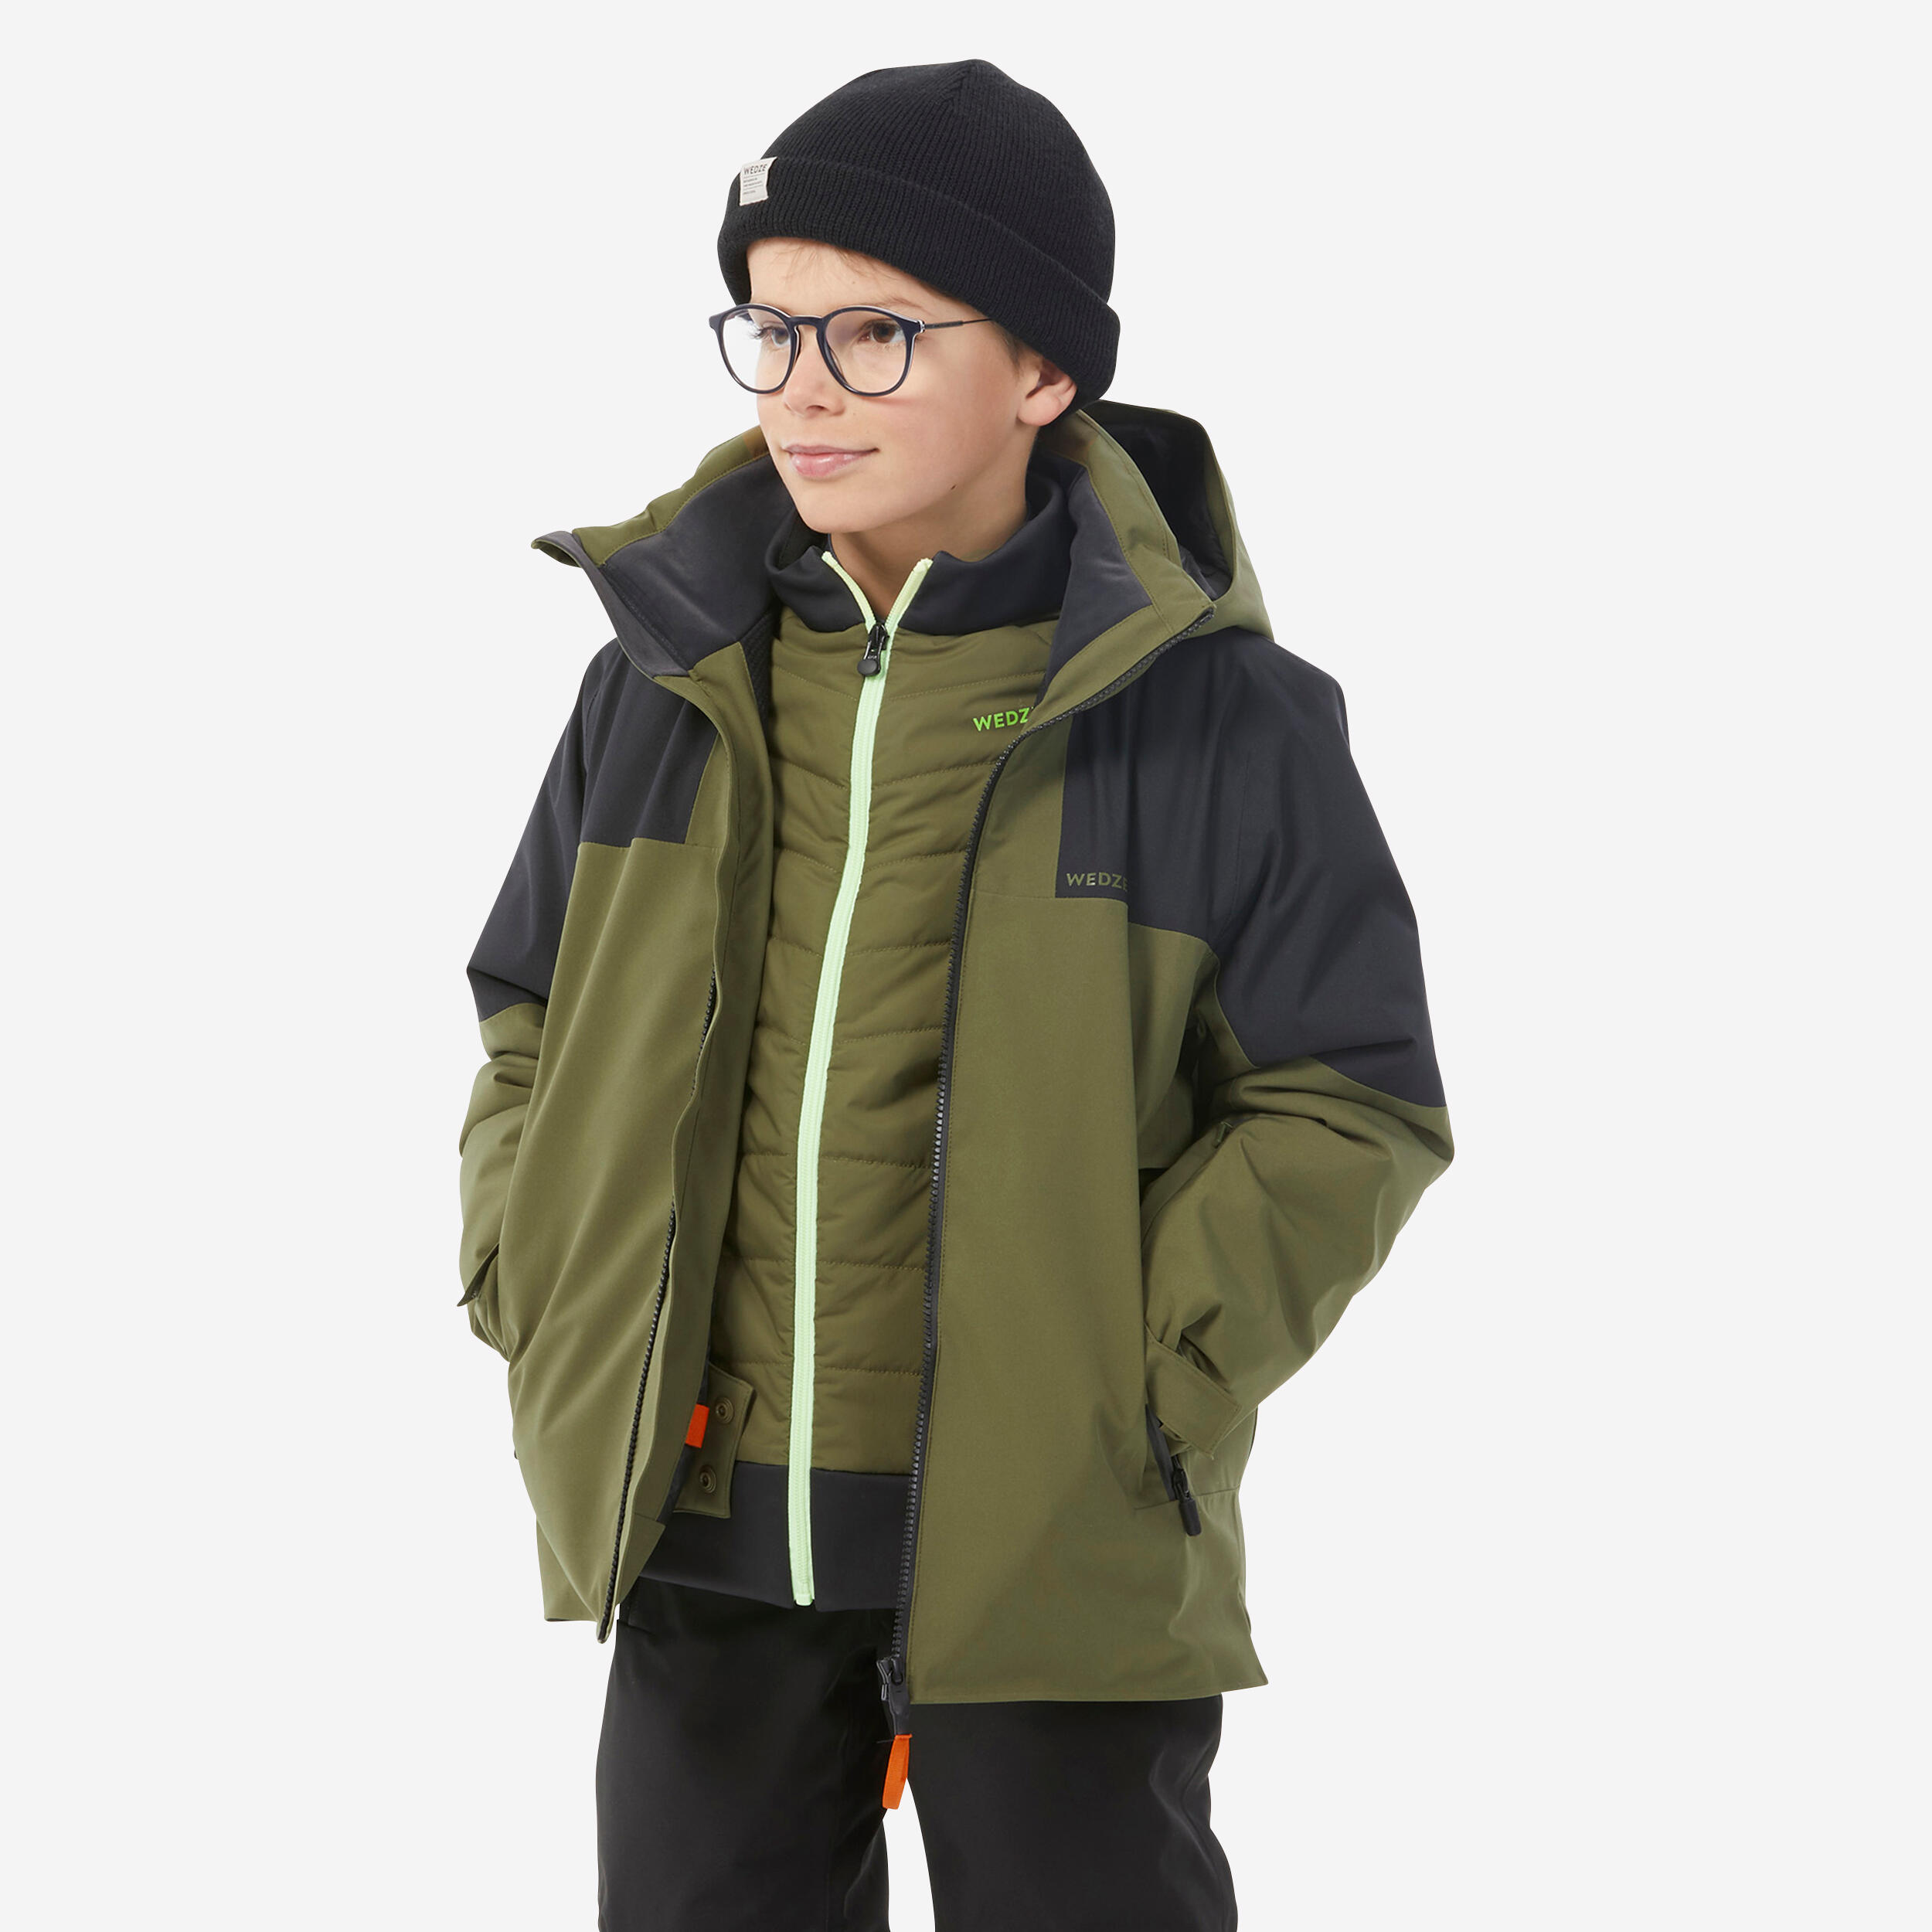 Kids’ warm and waterproof ski jacket 900 - Khaki 1/13